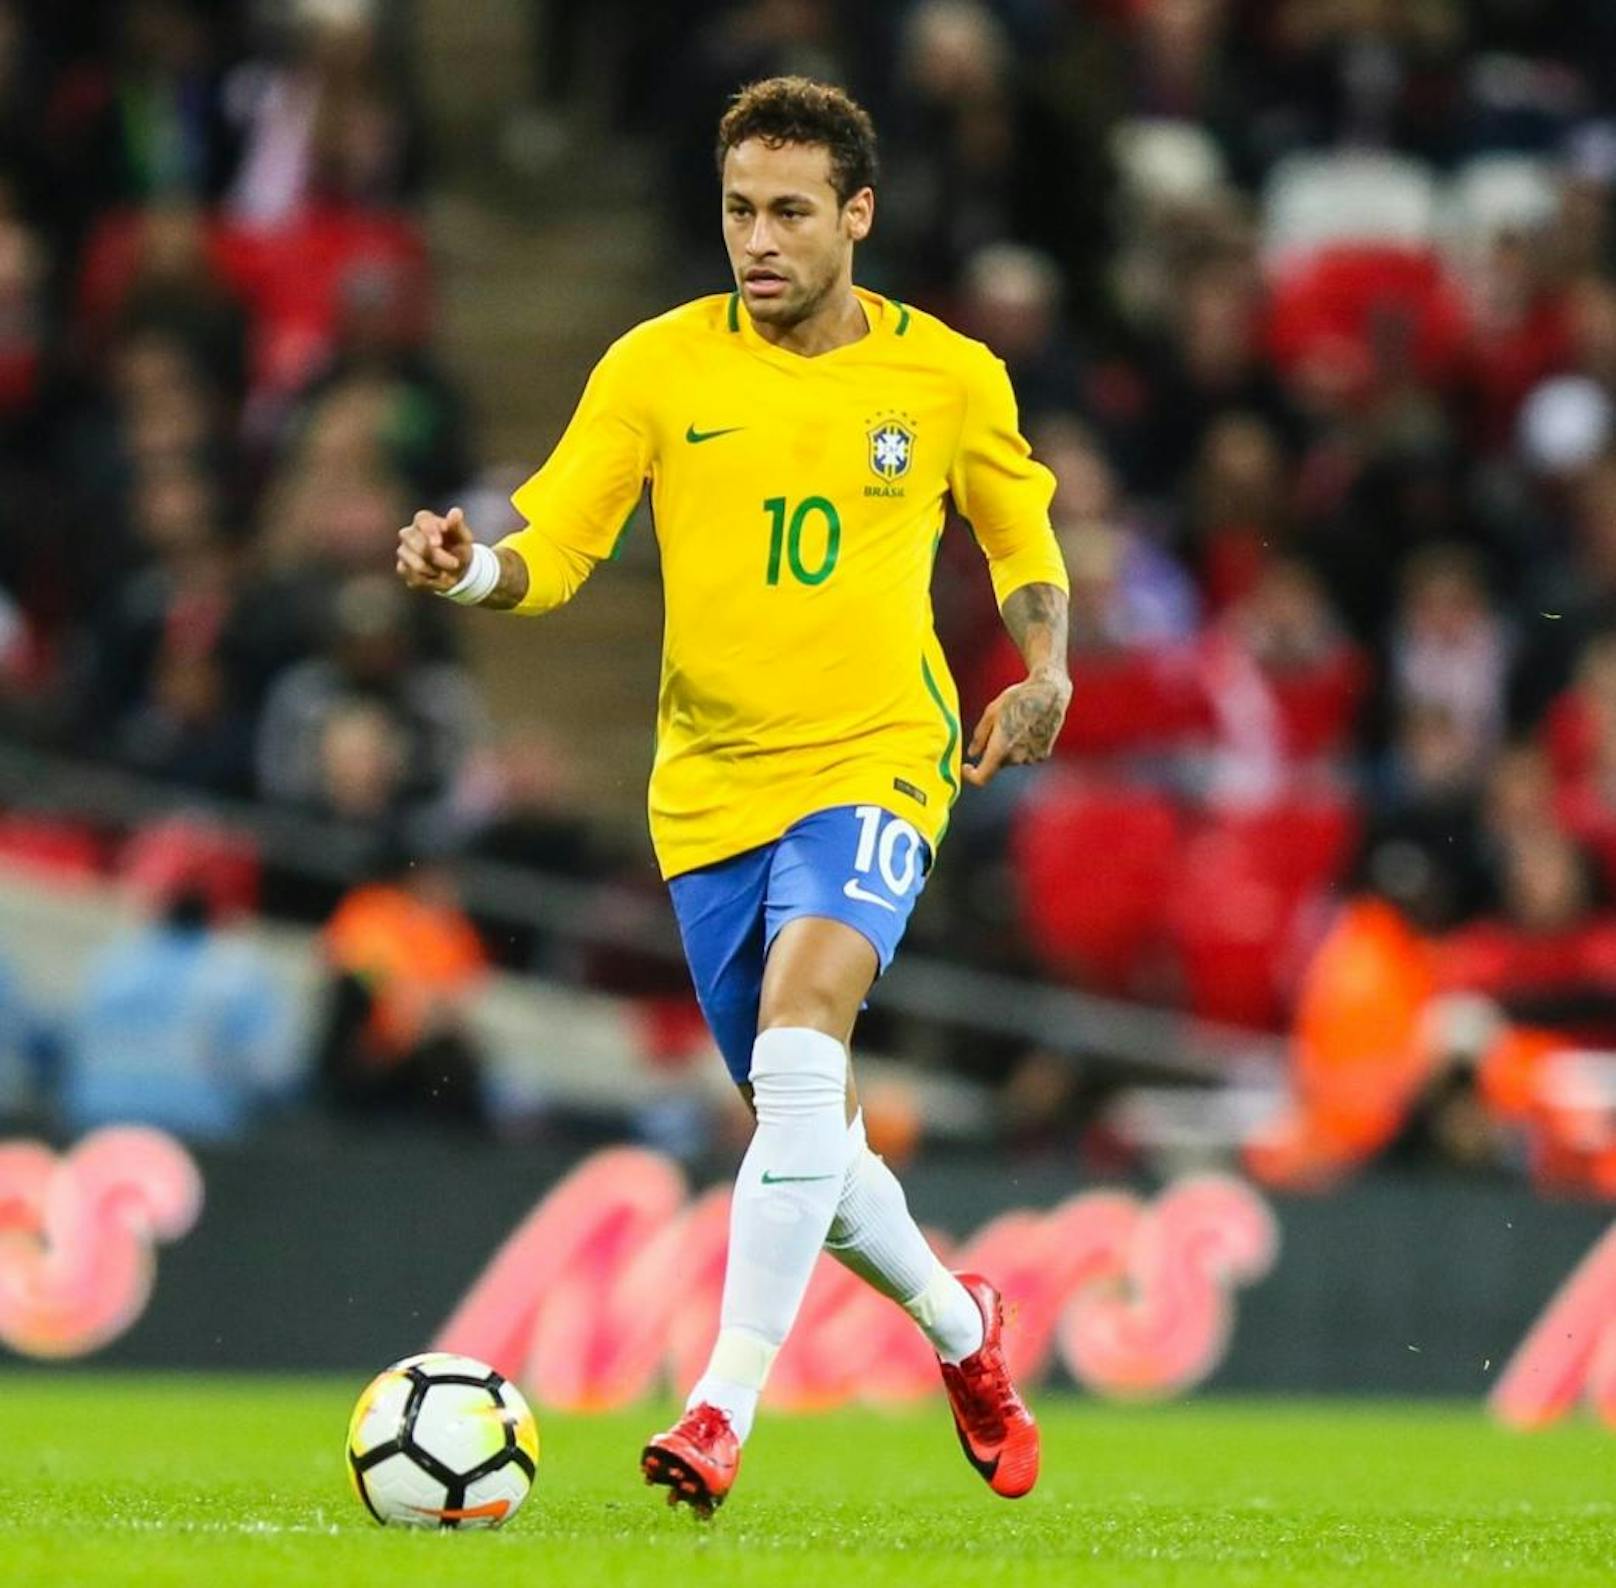 Neymar (26)
Position: Linksaußen
Verein: Paris Saint-Germain
Marktwert: 180,00 Mio.